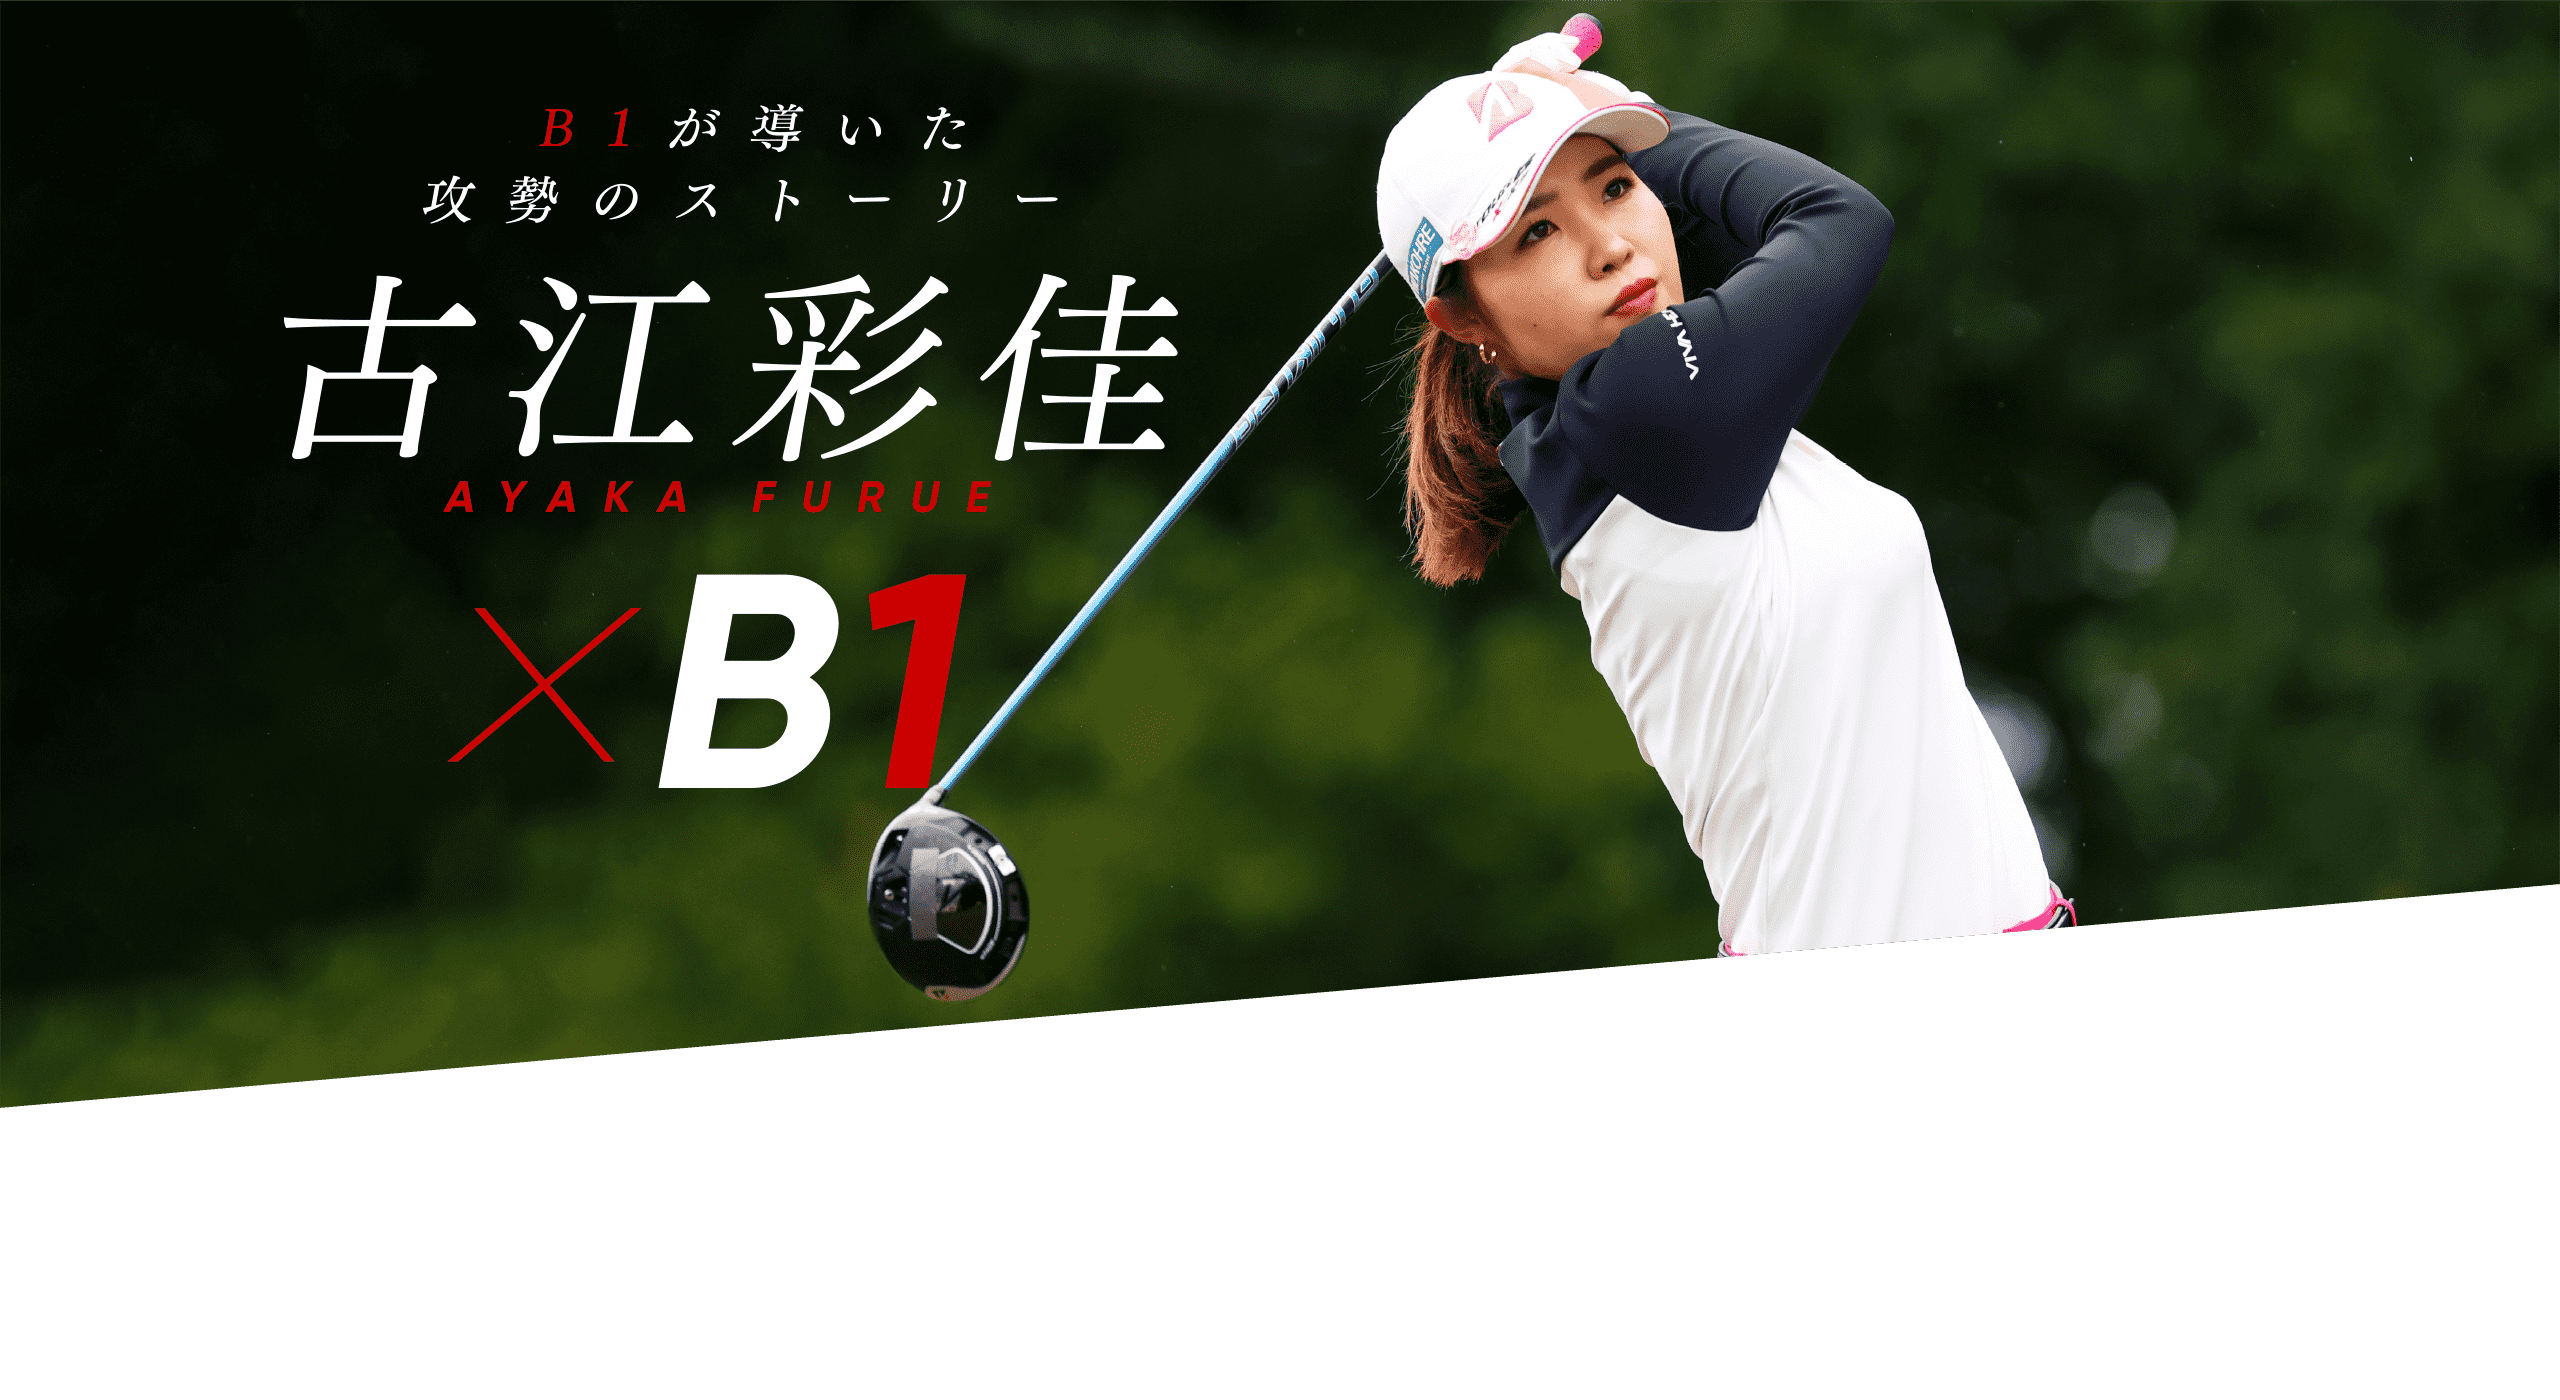 B1が導いた攻勢のストーリー 古江彩佳 ✕ B1